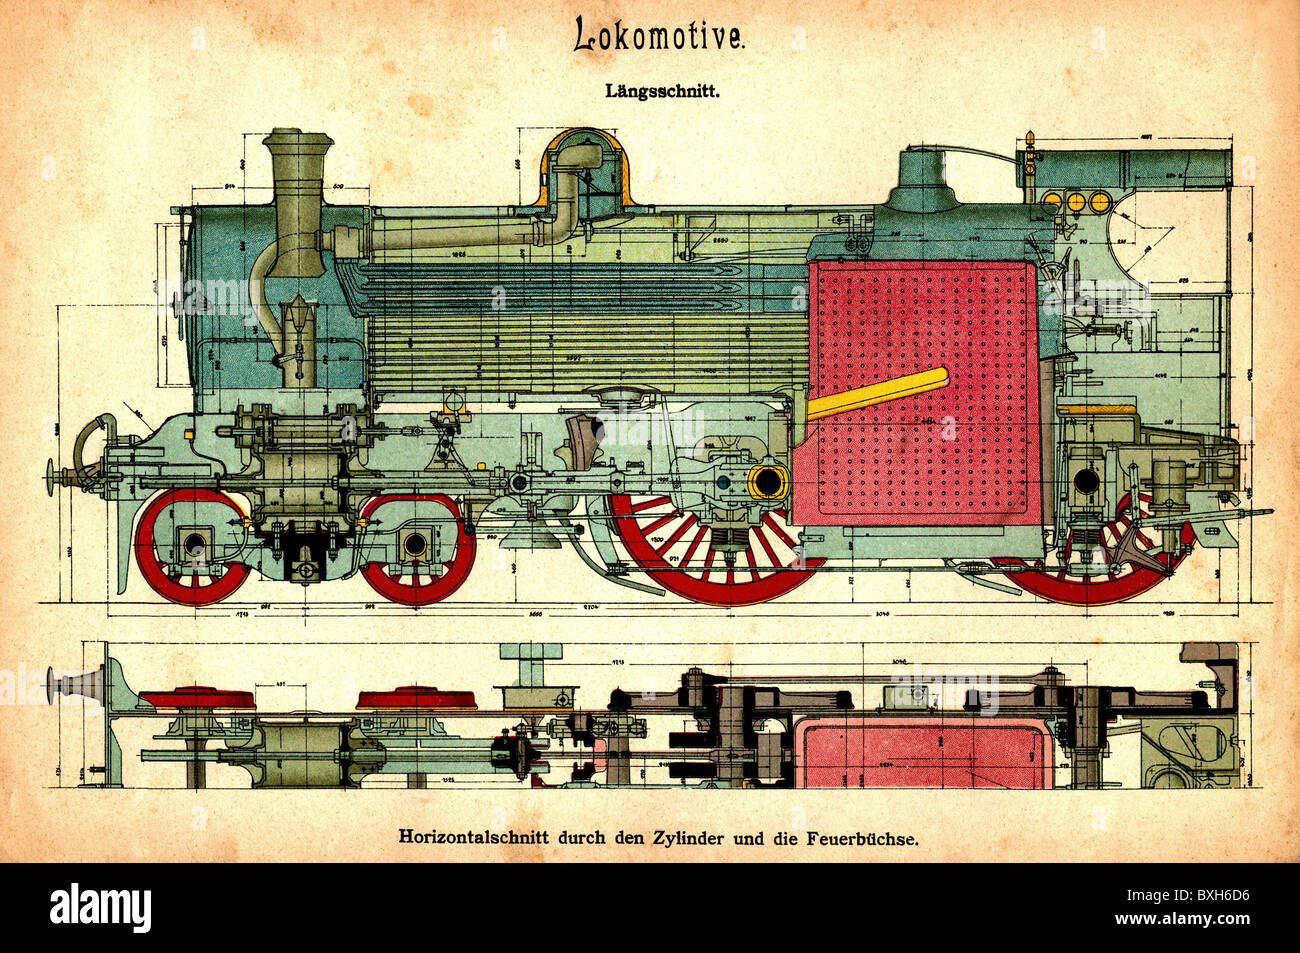 Transport / transport, chemin de fer, locomotive, section transversale, projet de construction, Allemagne, vers 1907, droits additionnels-Clearences-non disponible Banque D'Images